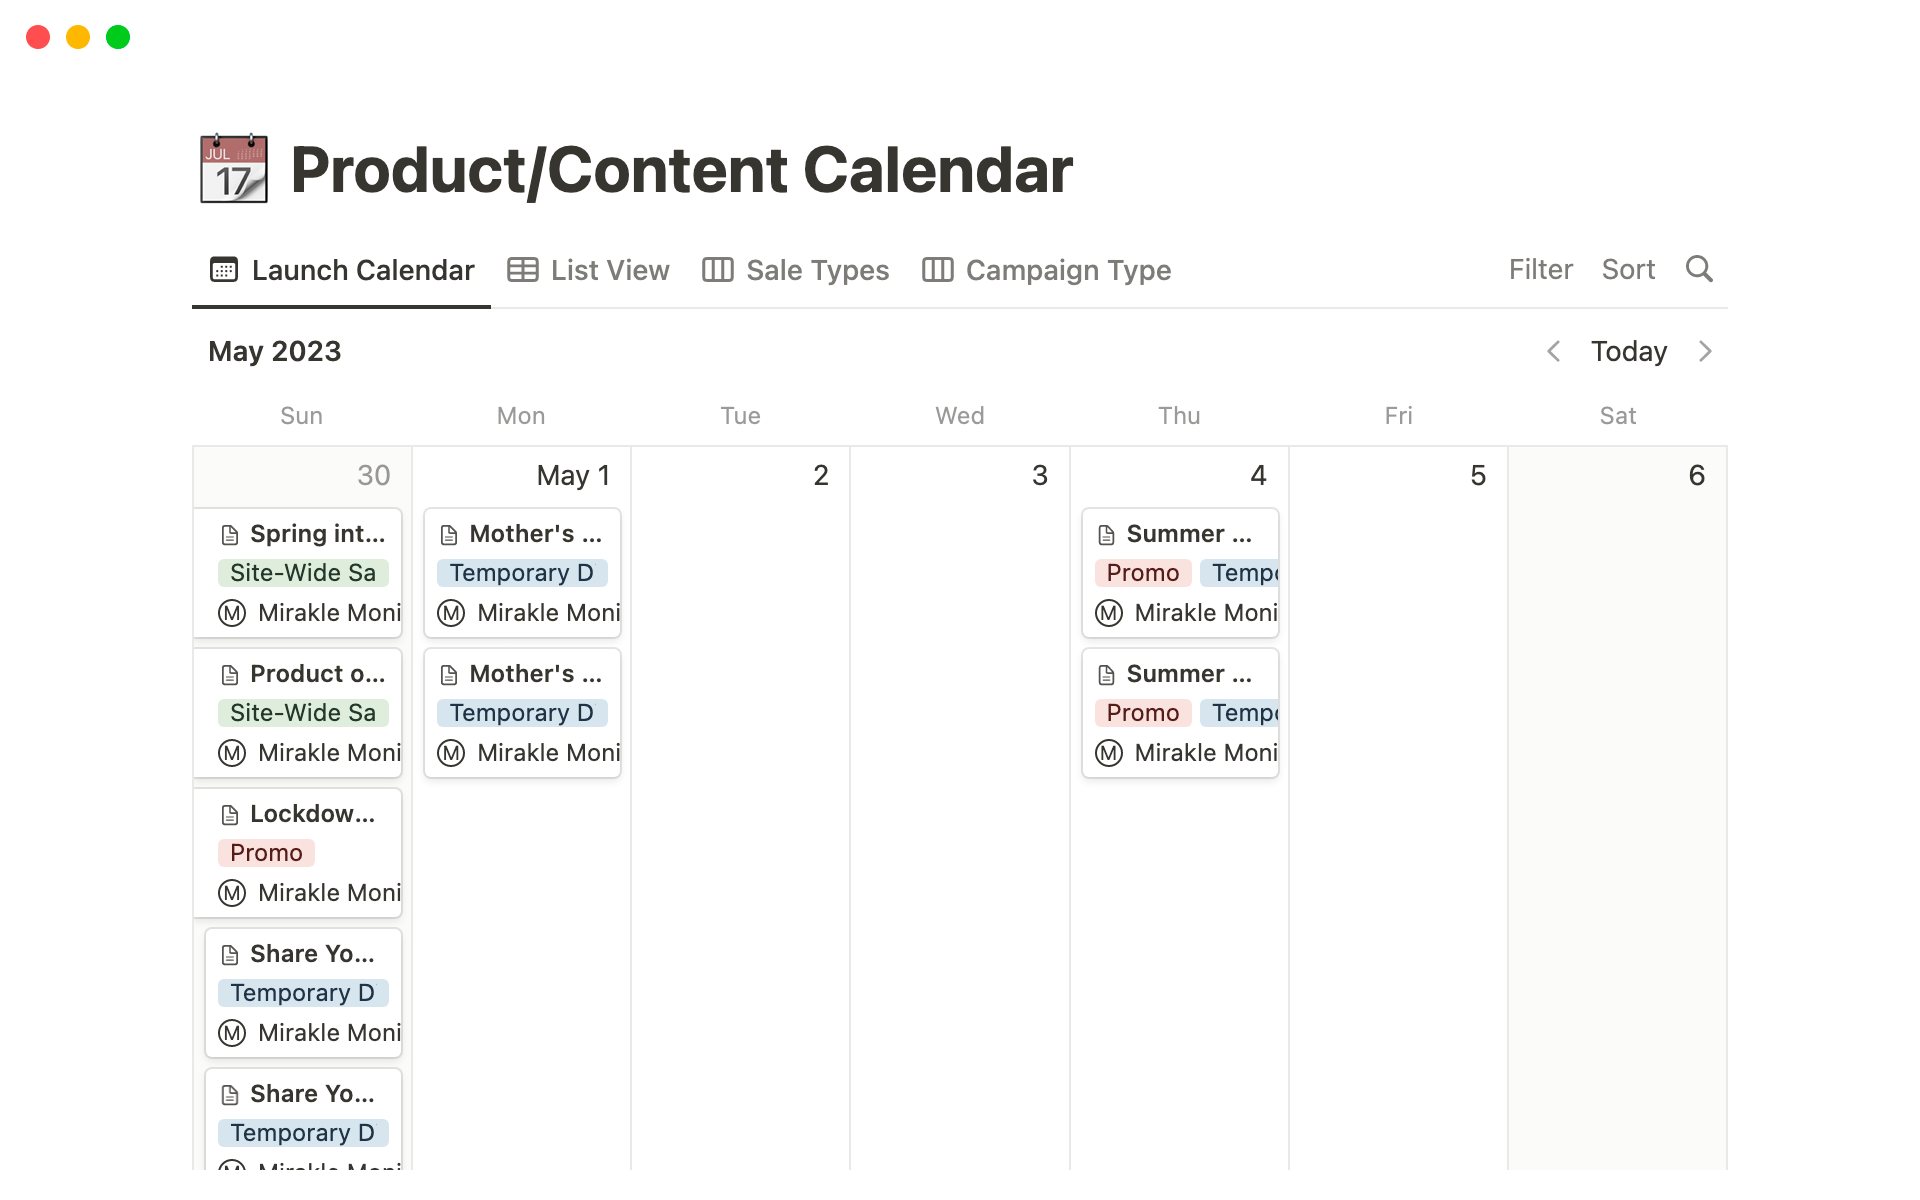 email-sms-product-content-calendar-mirakle-stillman-desktop